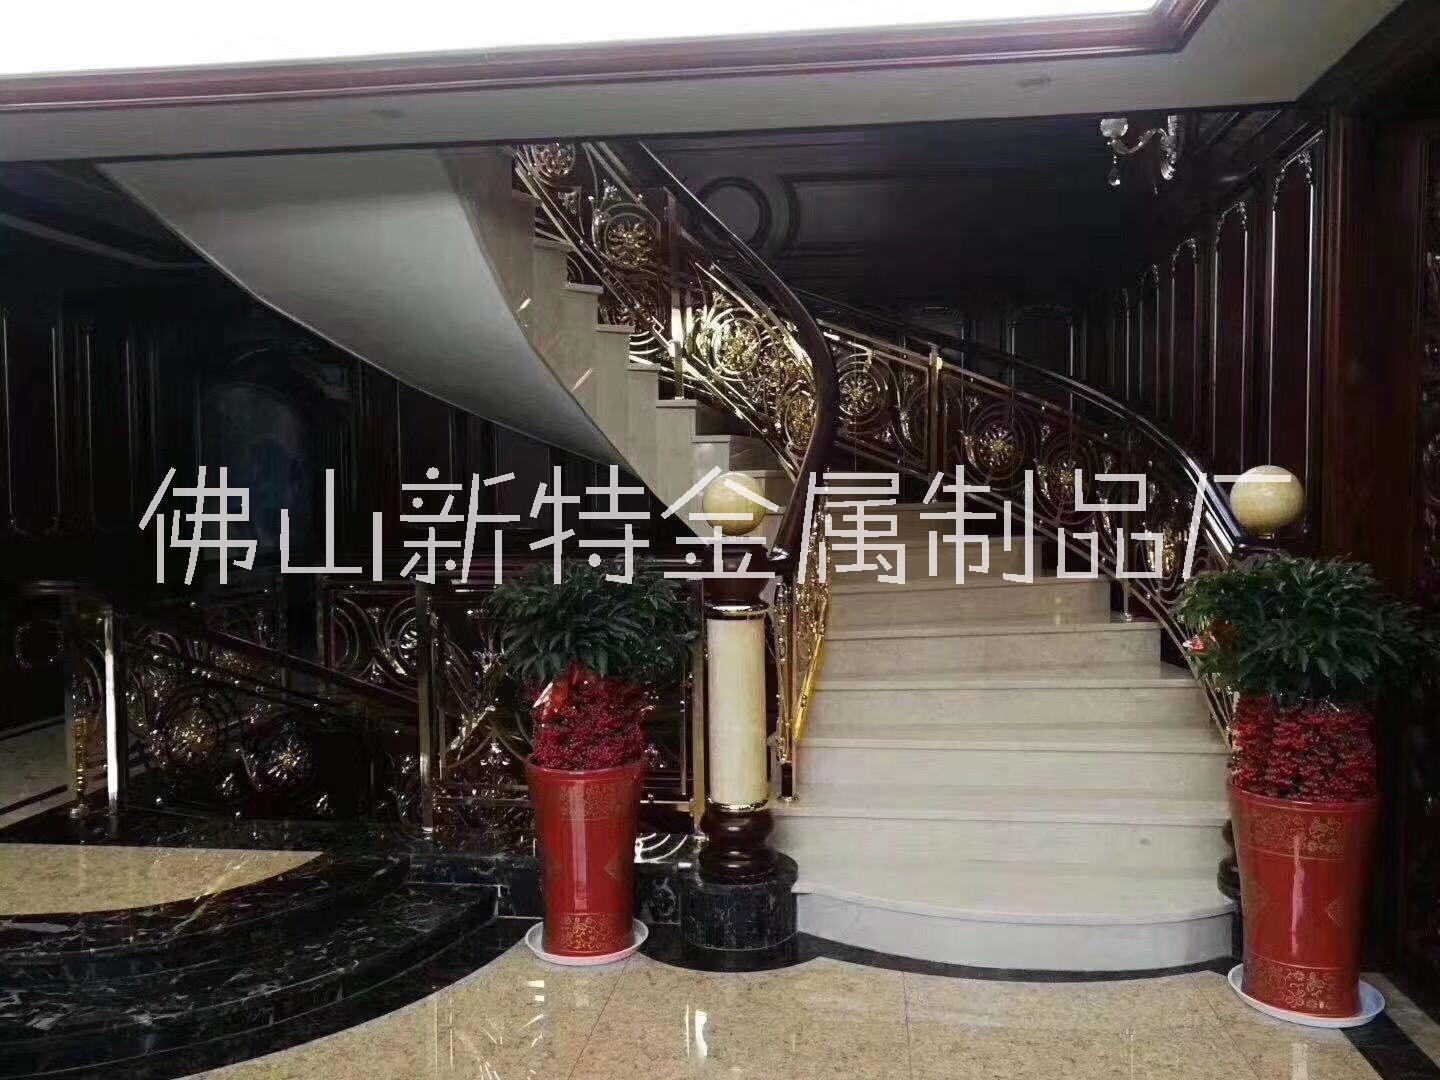 上海欧式弧形别墅镂空楼梯雕刻楼梯栏杆扶手安装效果图片